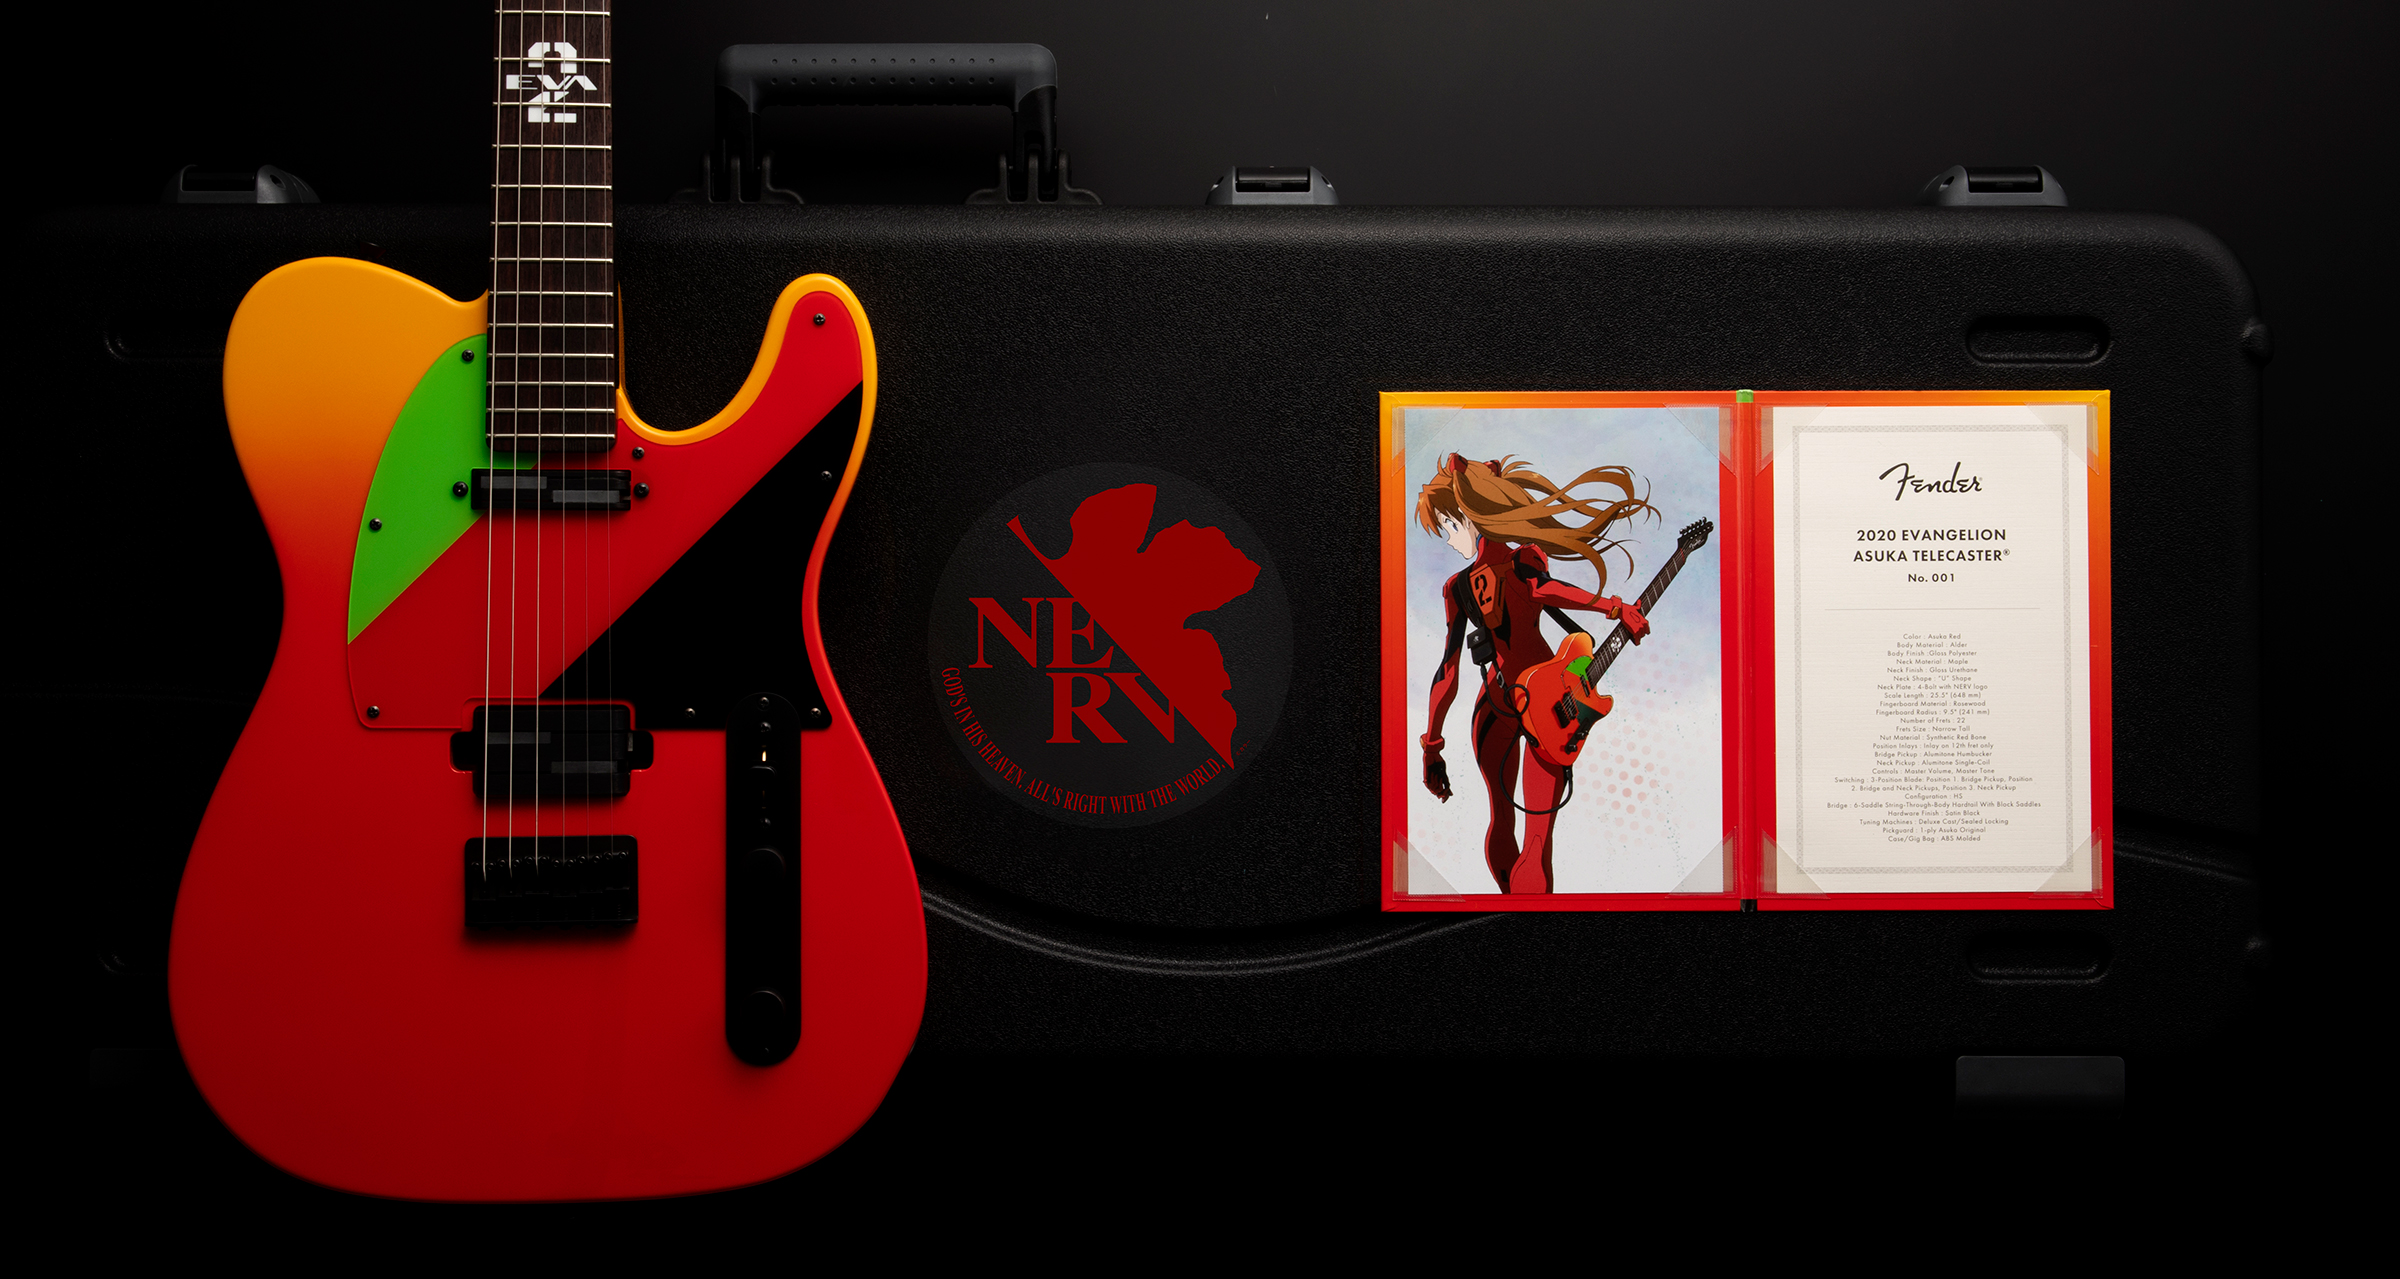 【数量限定エヴァギター！】Fender 2020 EVANGELION ASUKA TELECASTER 予約受付開始！